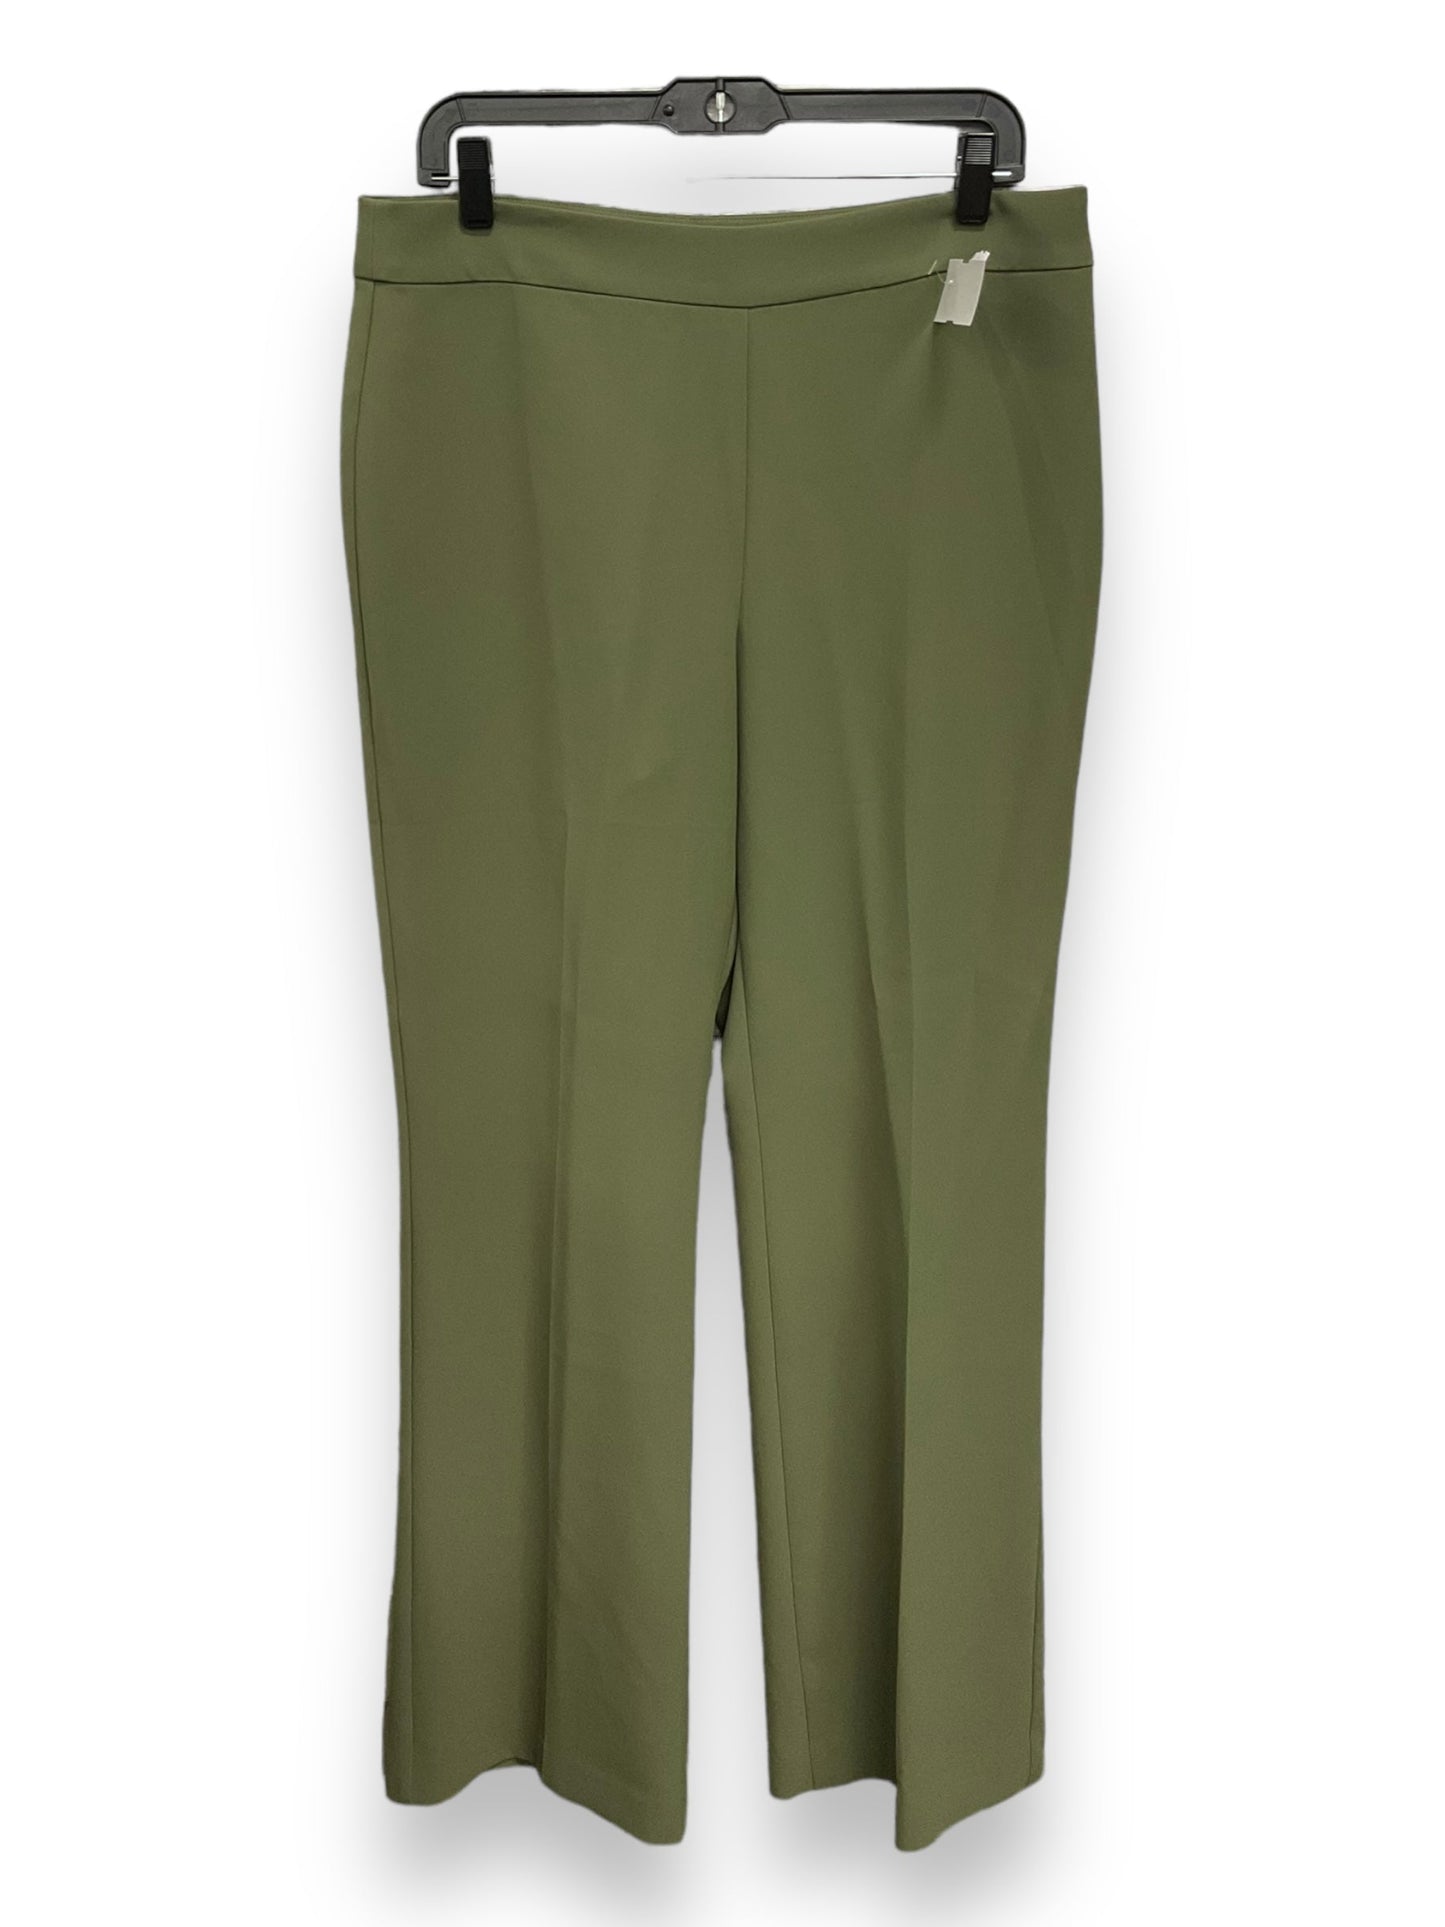 Green Pants Dress Ann Taylor, Size 10